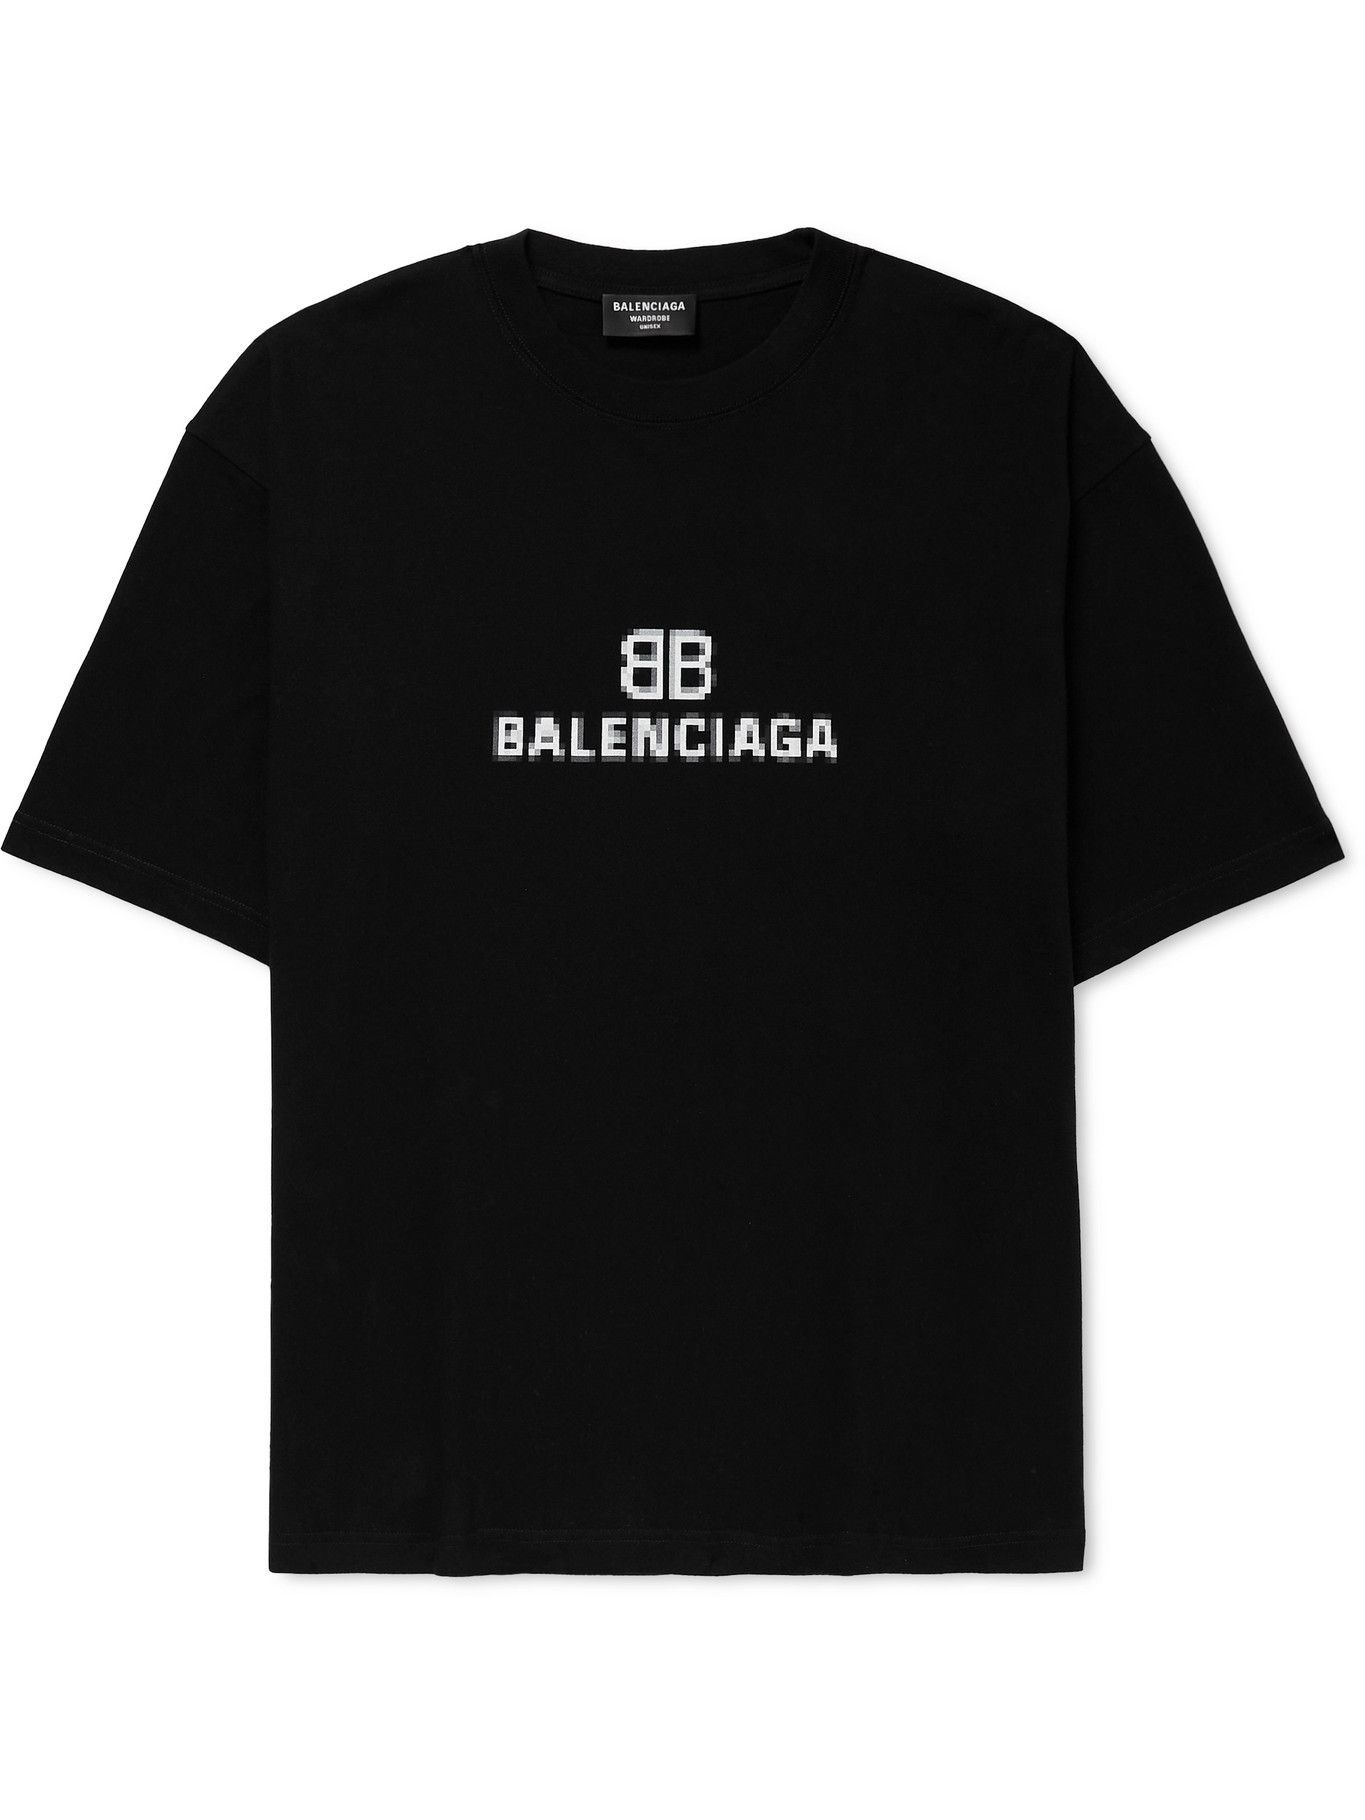 BALENCIAGA - Logo-Print Cotton-Jersey T-Shirt - Black Balenciaga